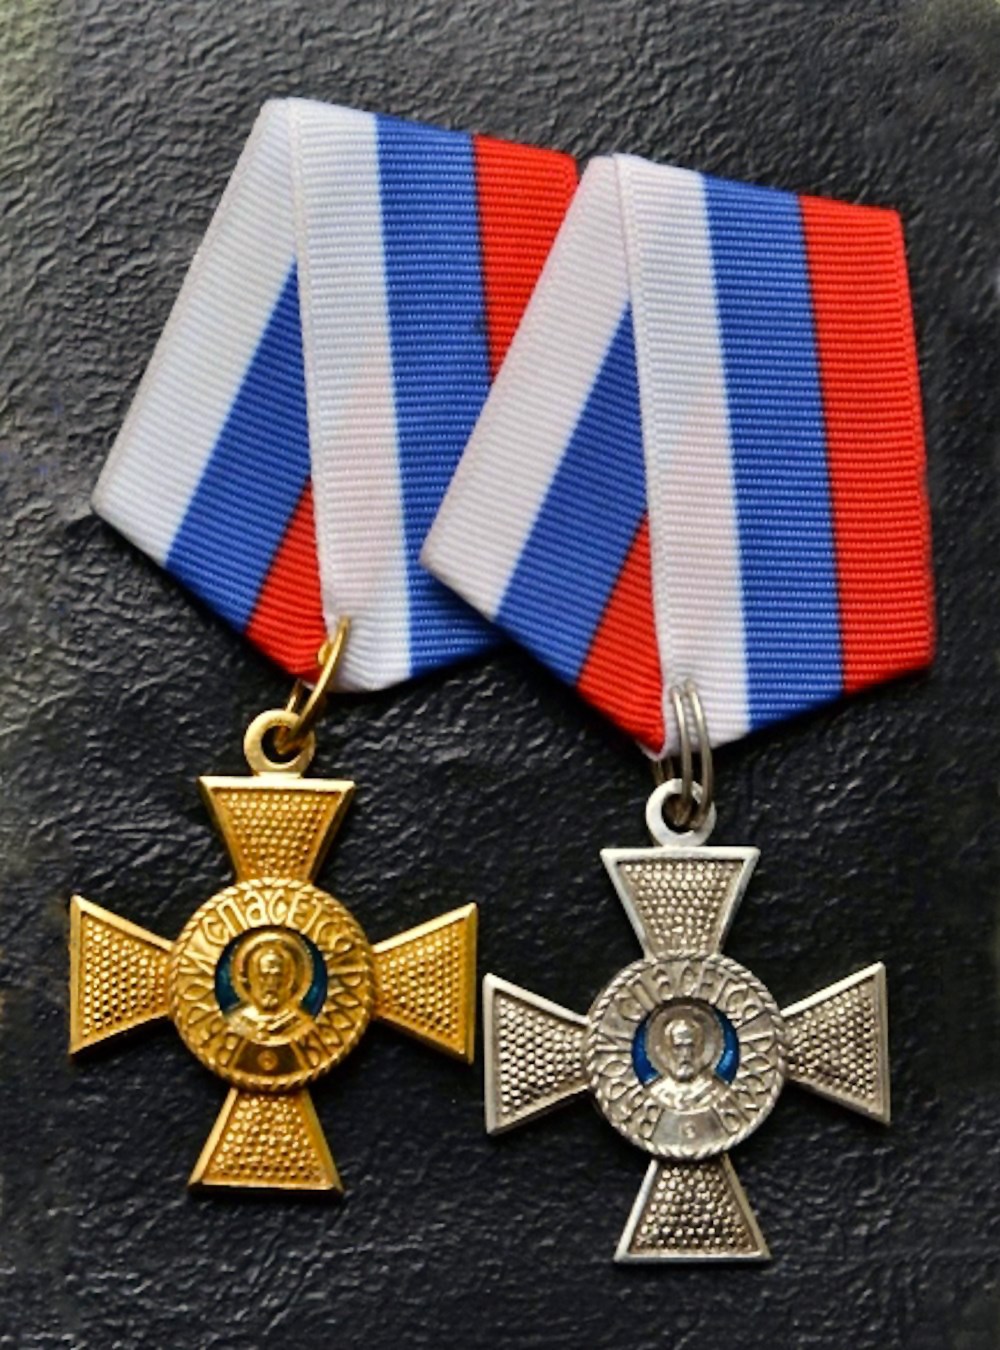 00 dnr medals 02 130915